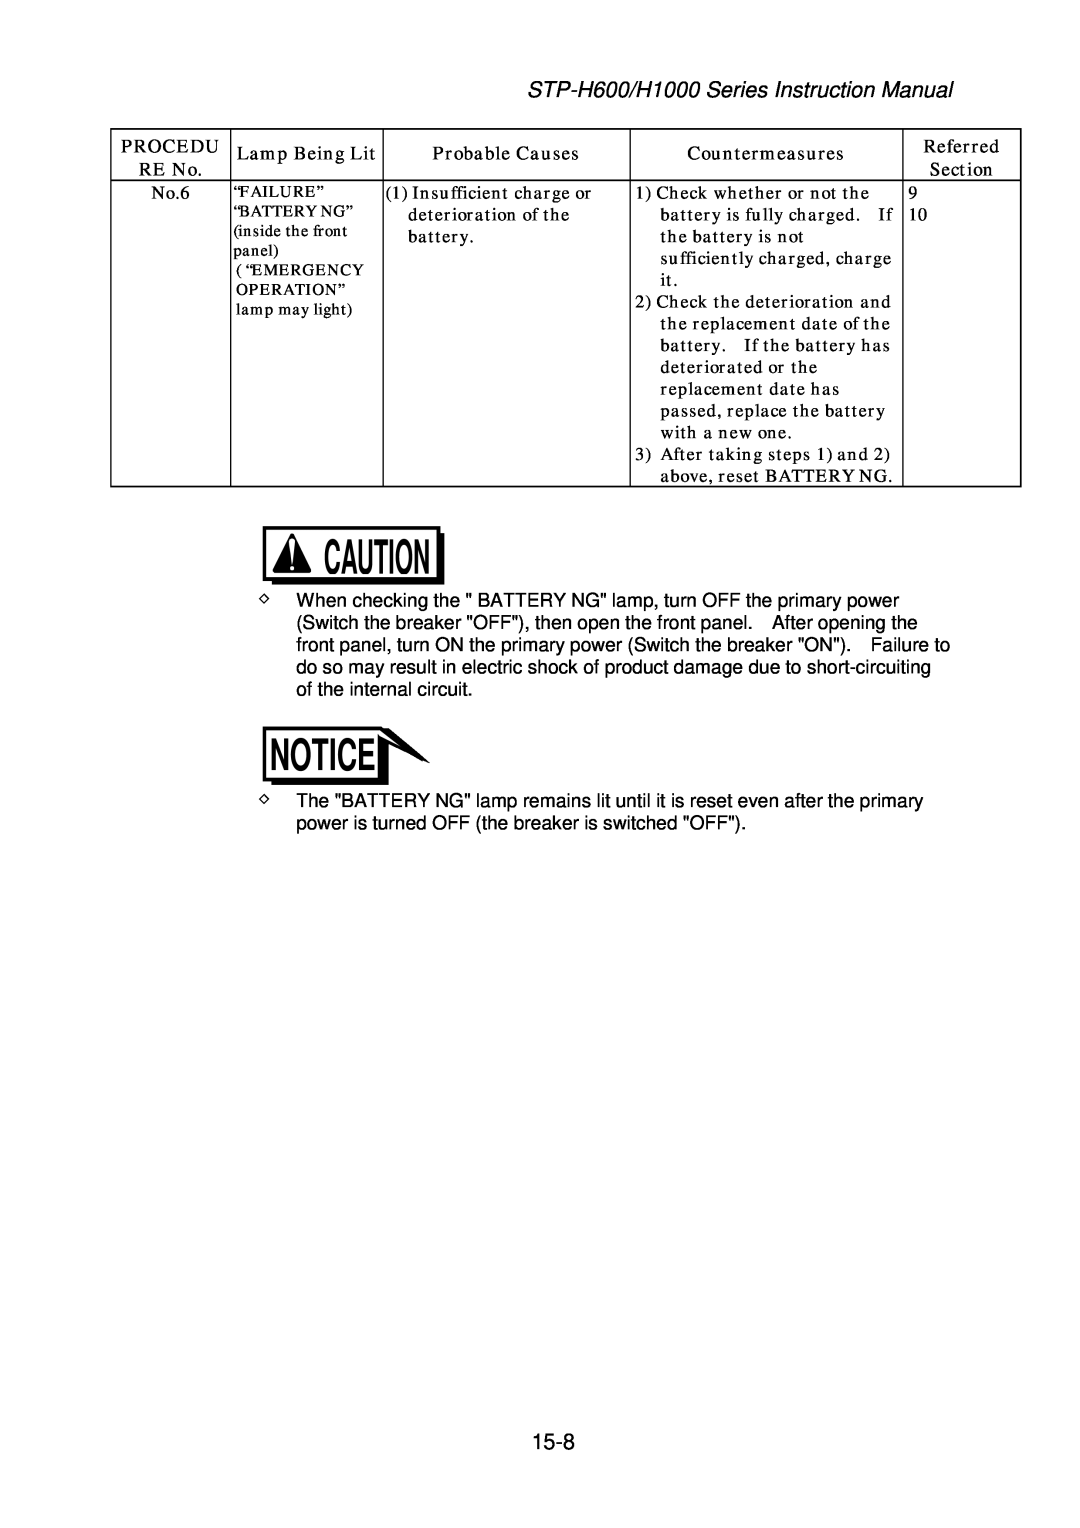 Seiko Instruments MT-17E-003-D instruction manual No.6 